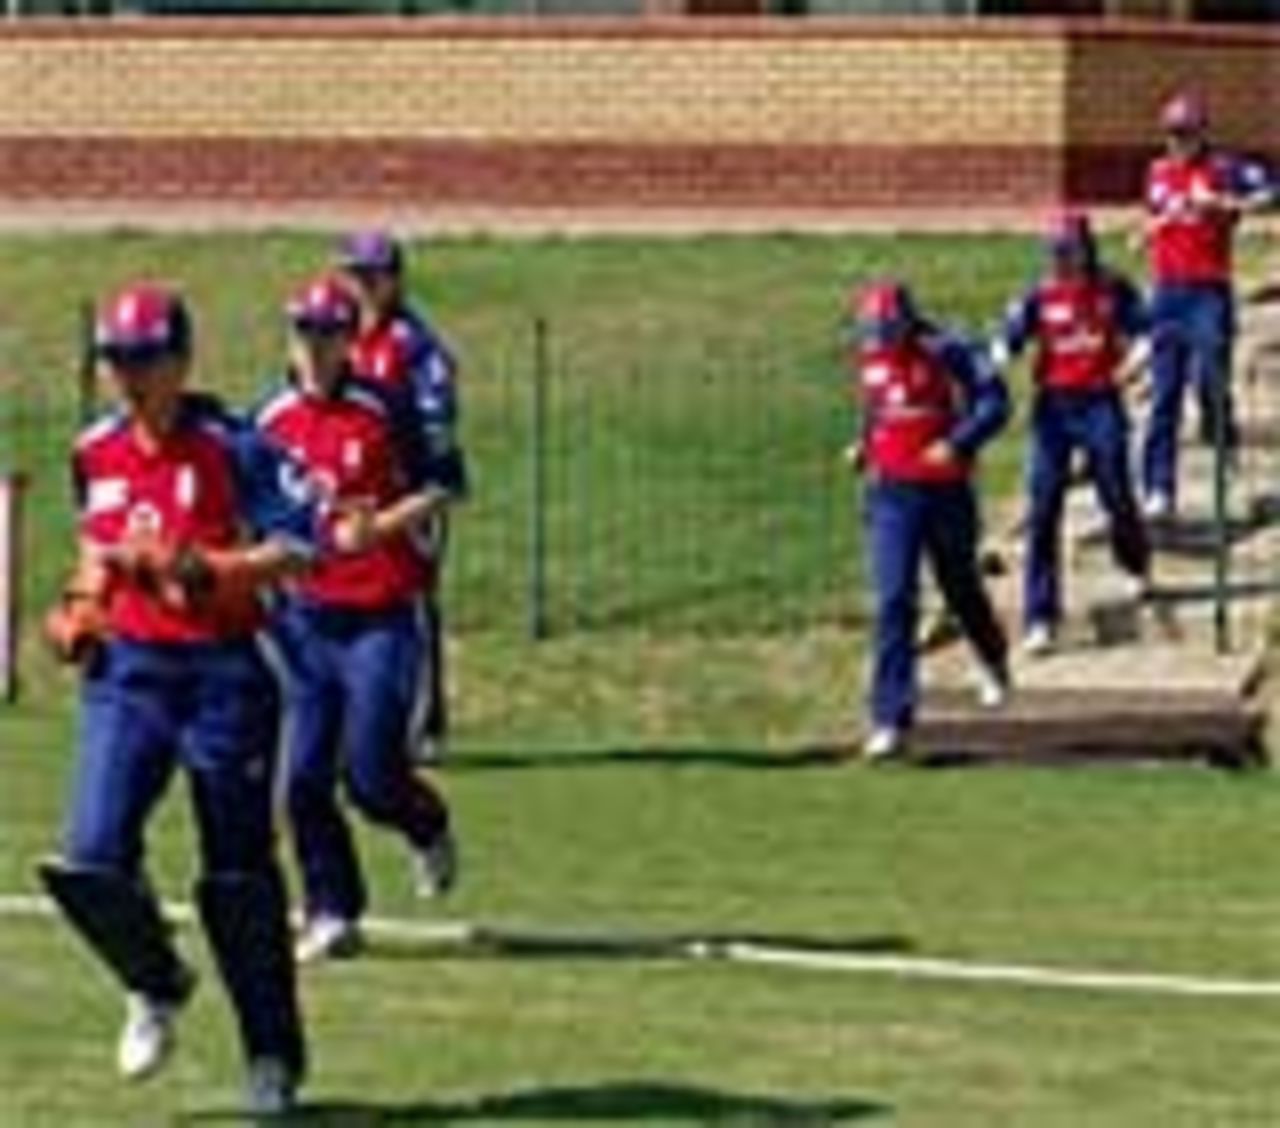 England run out in their warm-up match, Gauteng v England women, March 20, 2005